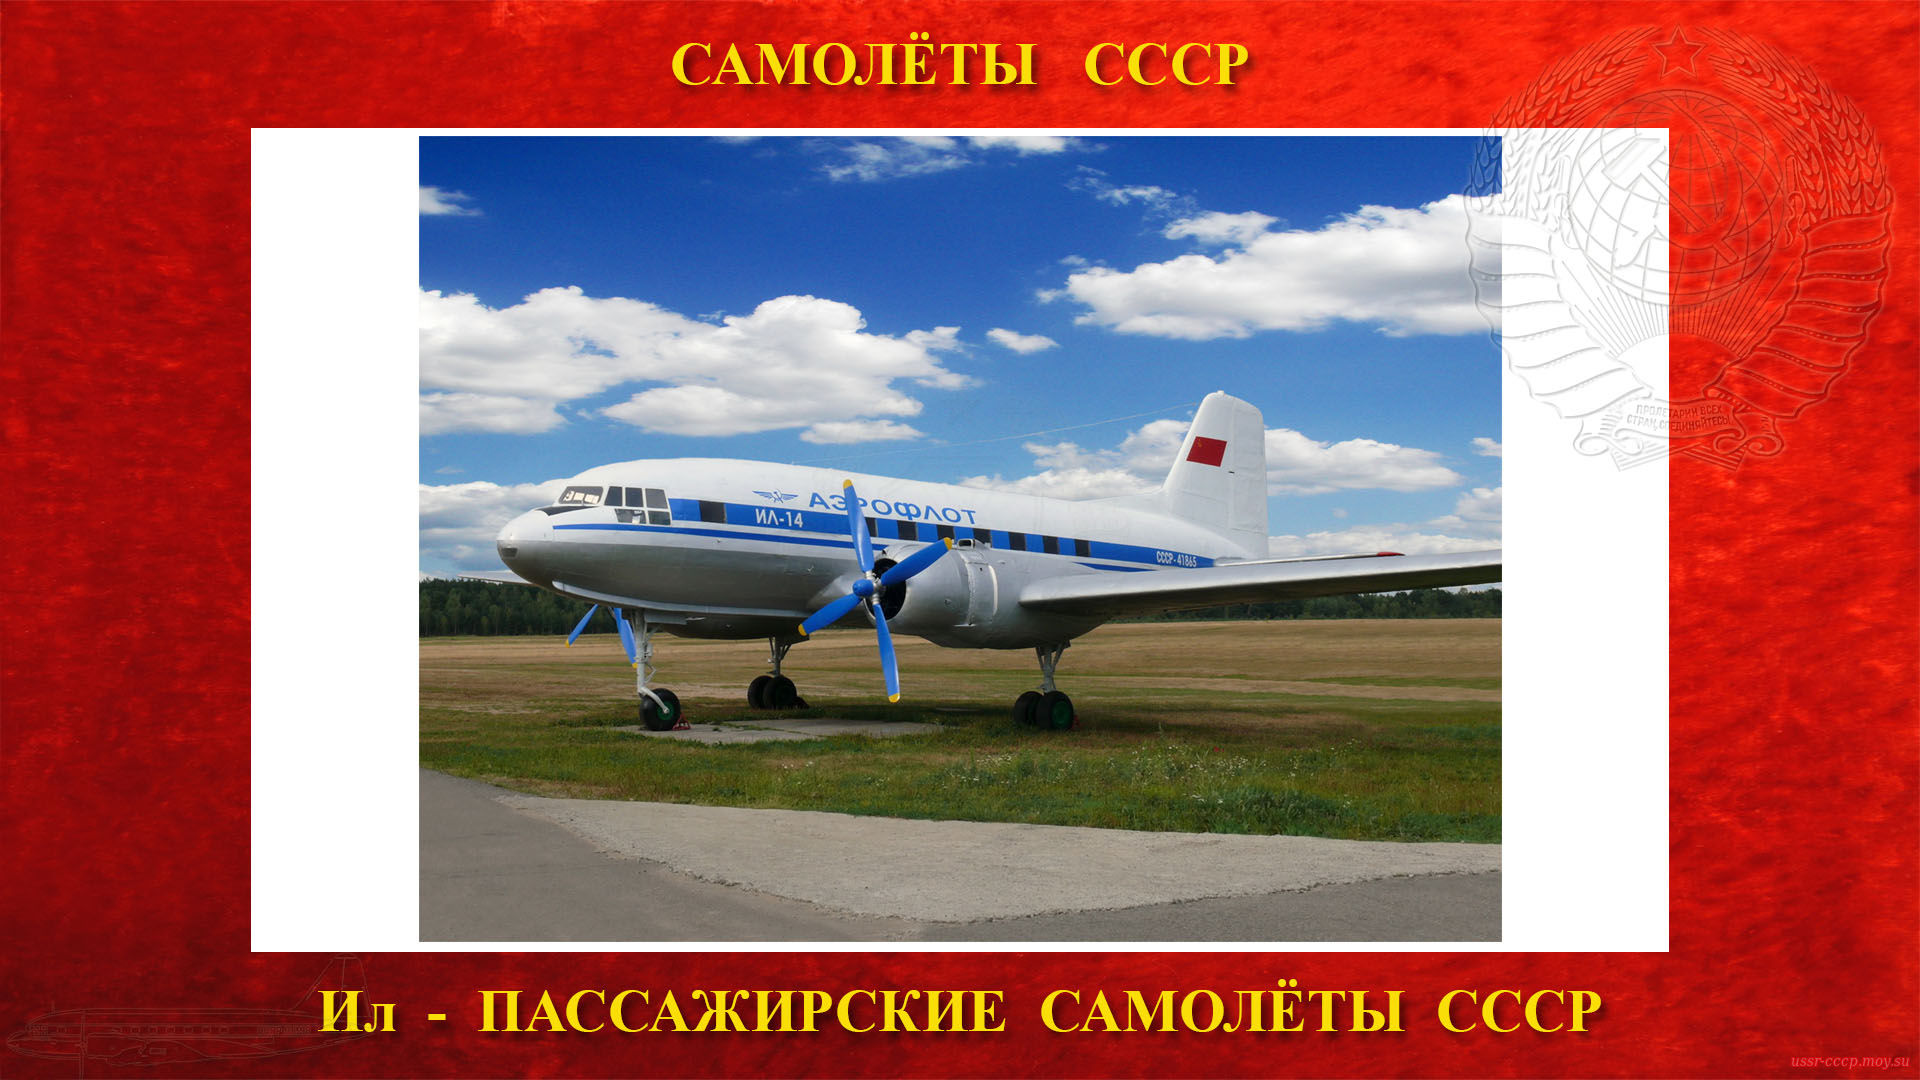 Ил-14 — Пассажирский (транспортный) самолёт СССР (1950)